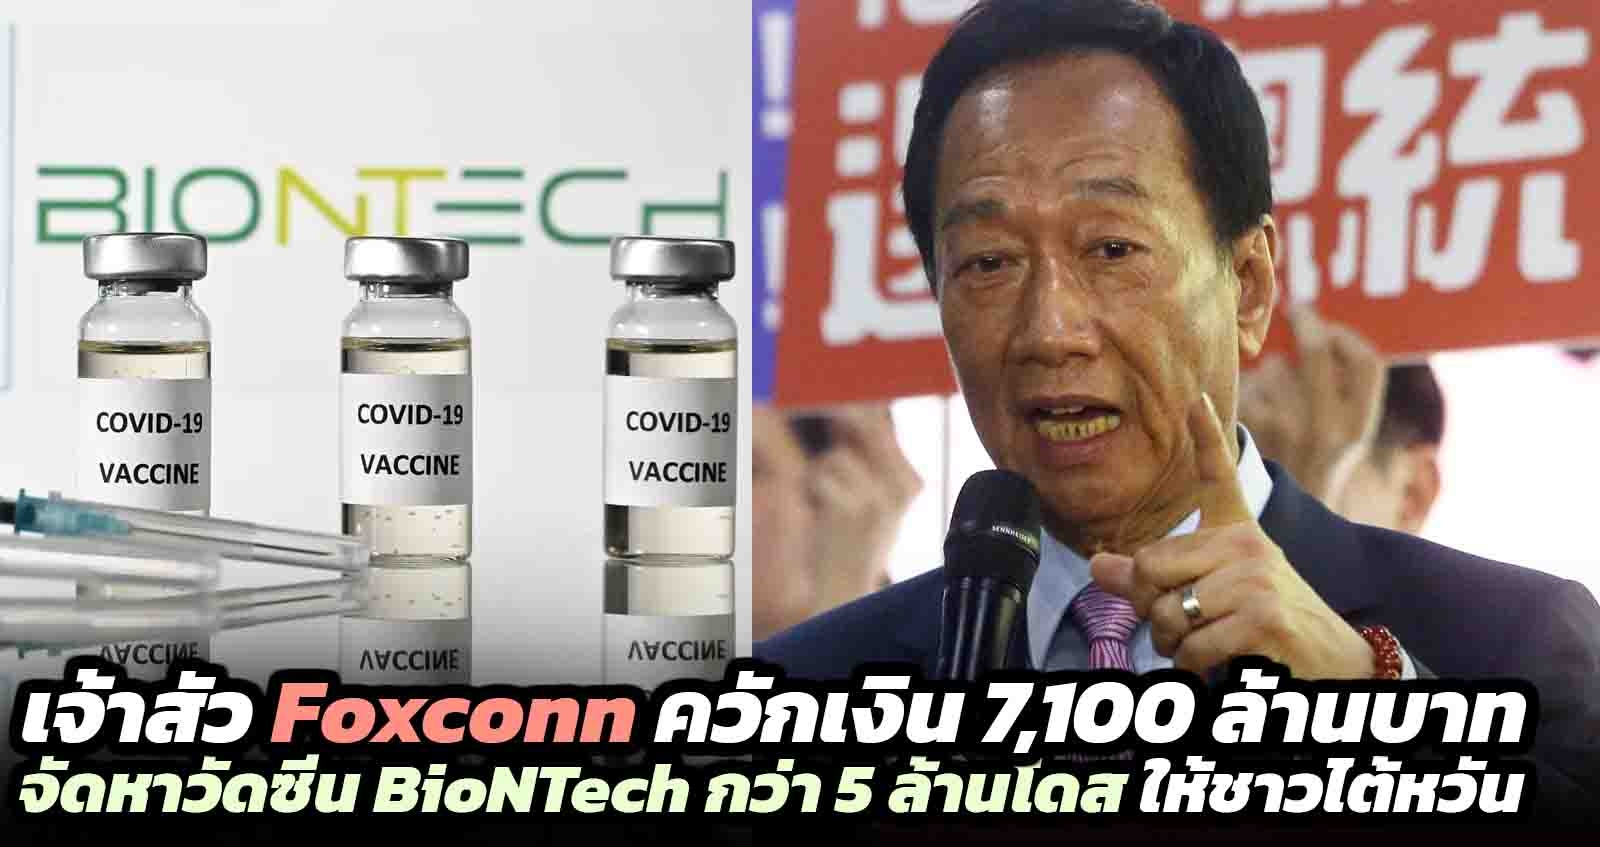 เจ้าสัว Foxconn ควักเงิน 7,100 ล้านบาท ซื้อวัดซีน BioNTech กว่า 5 ล้านโดส ให้ชาวไต้หวัน